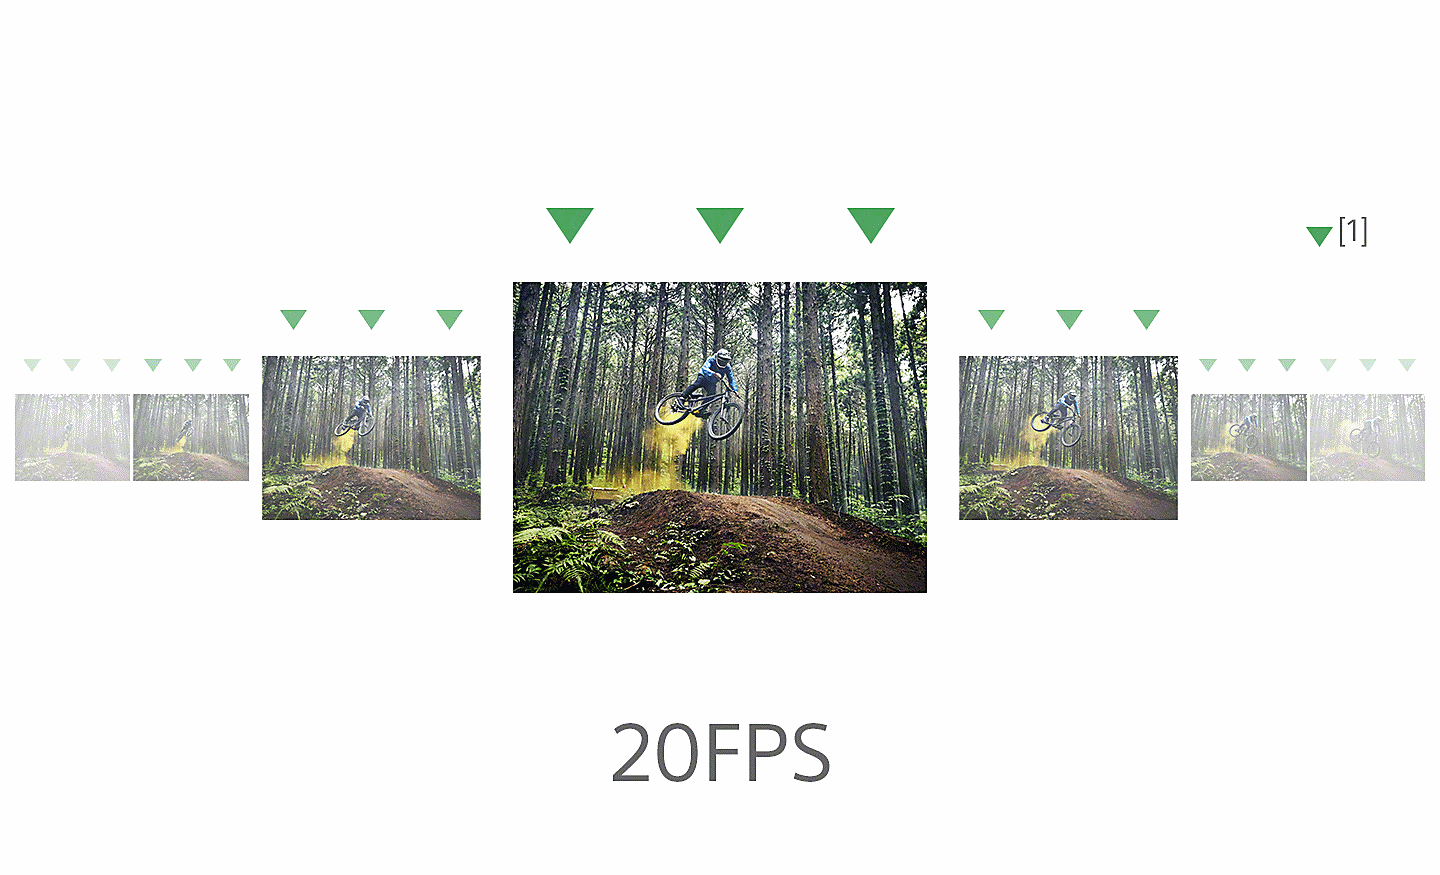 Plusieurs images montrant un vététiste qui effectue un saut sur un chemin forestier